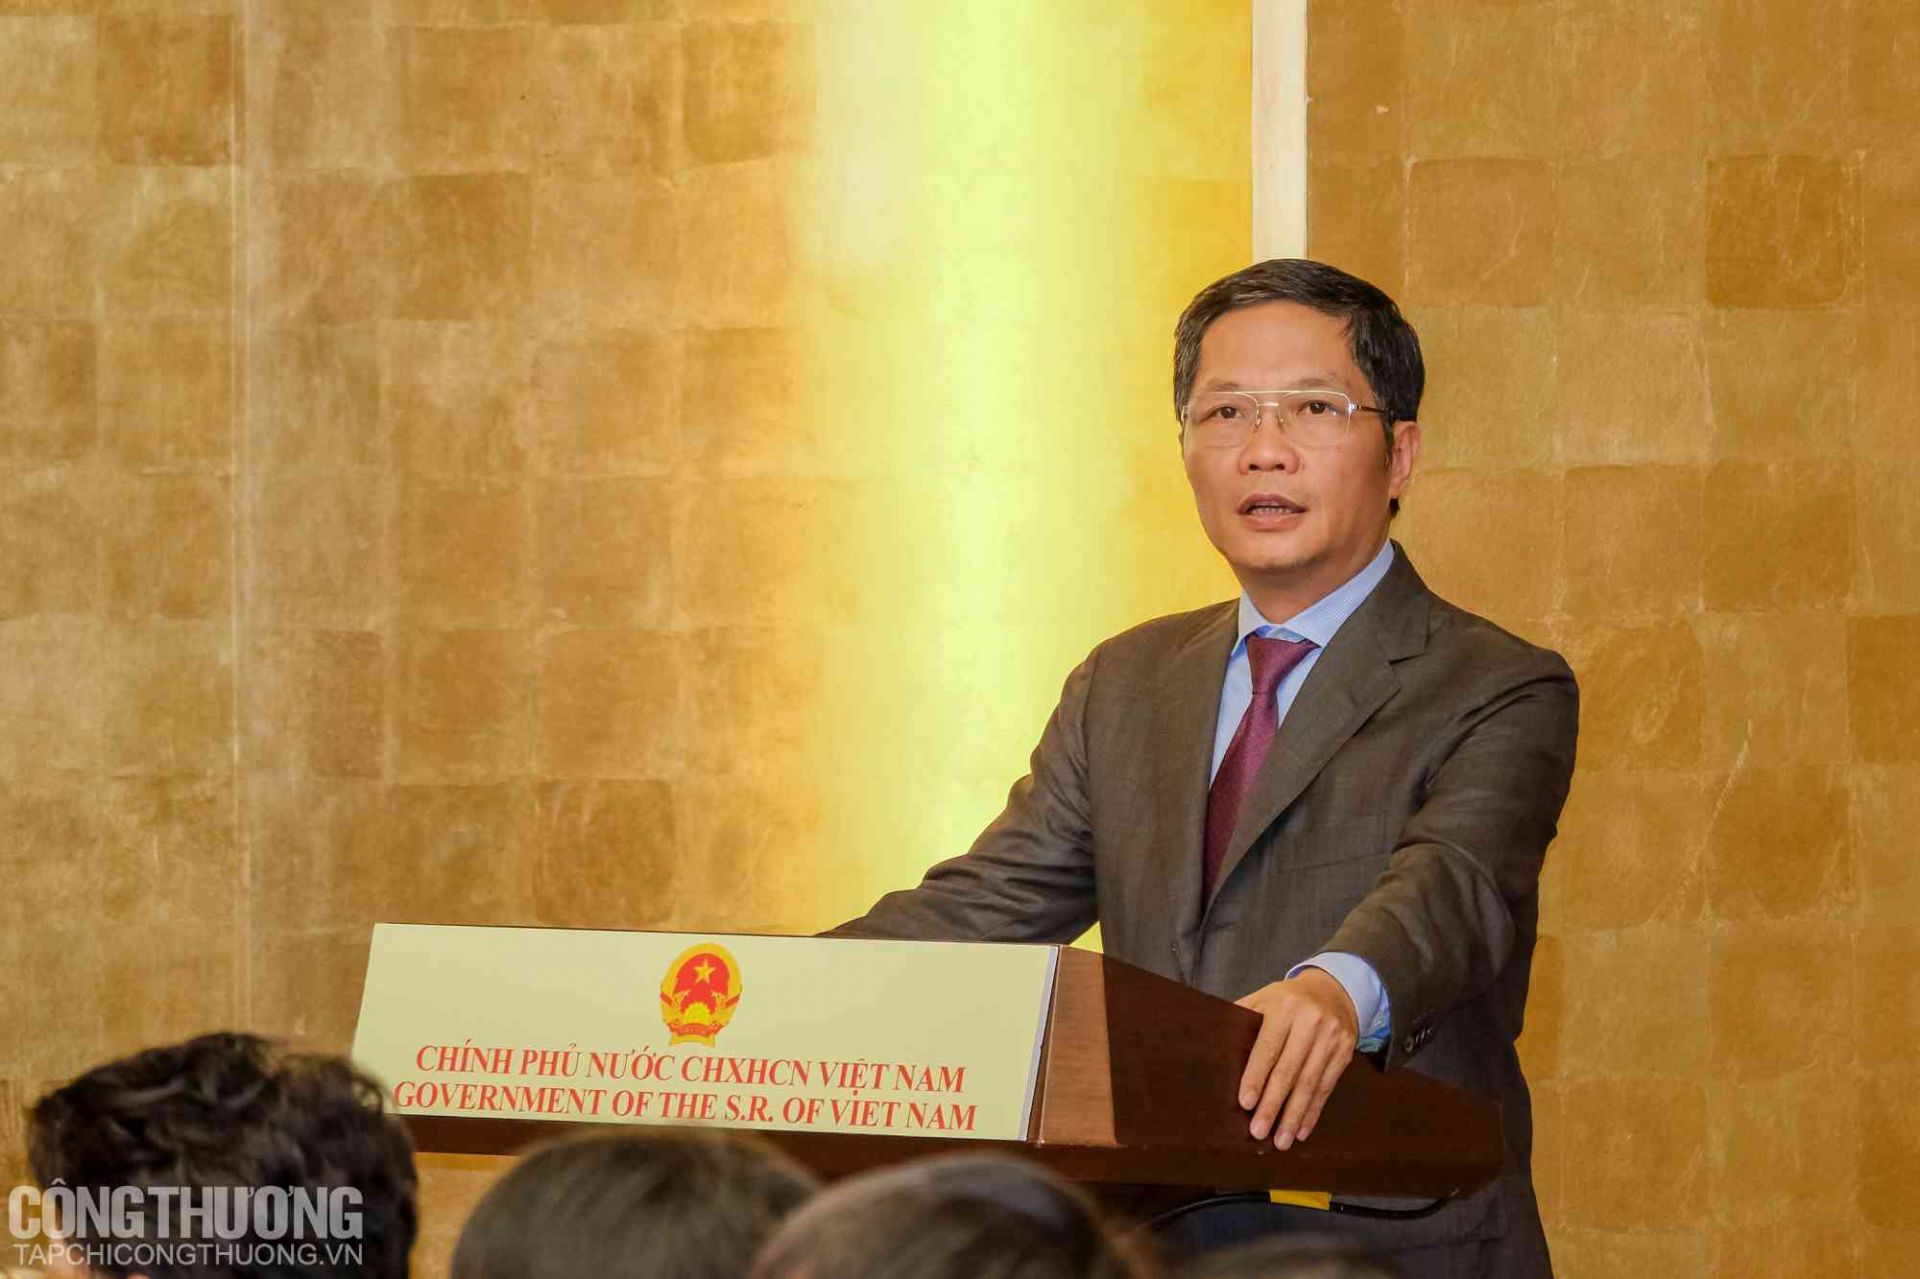 Bộ trưởng Bộ Công Thương Trần Tuấn Anh - Chủ tịch Hội đồng THQG Việt Nam báo cáo tại buổi gặp mặt